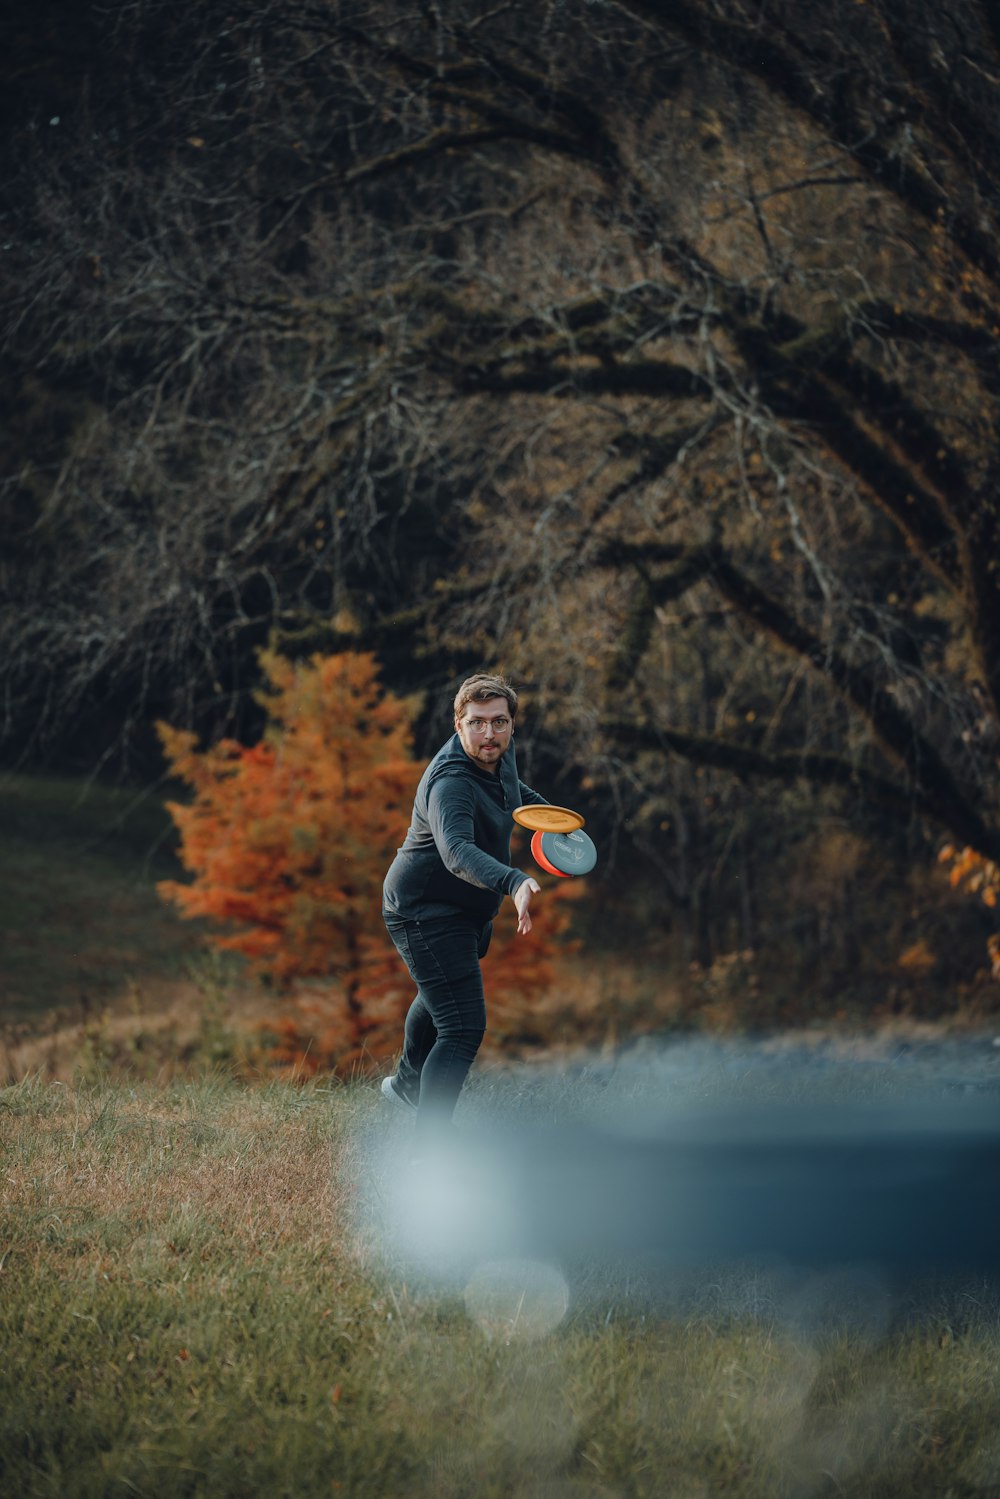 Un uomo sta lanciando un frisbee in un campo